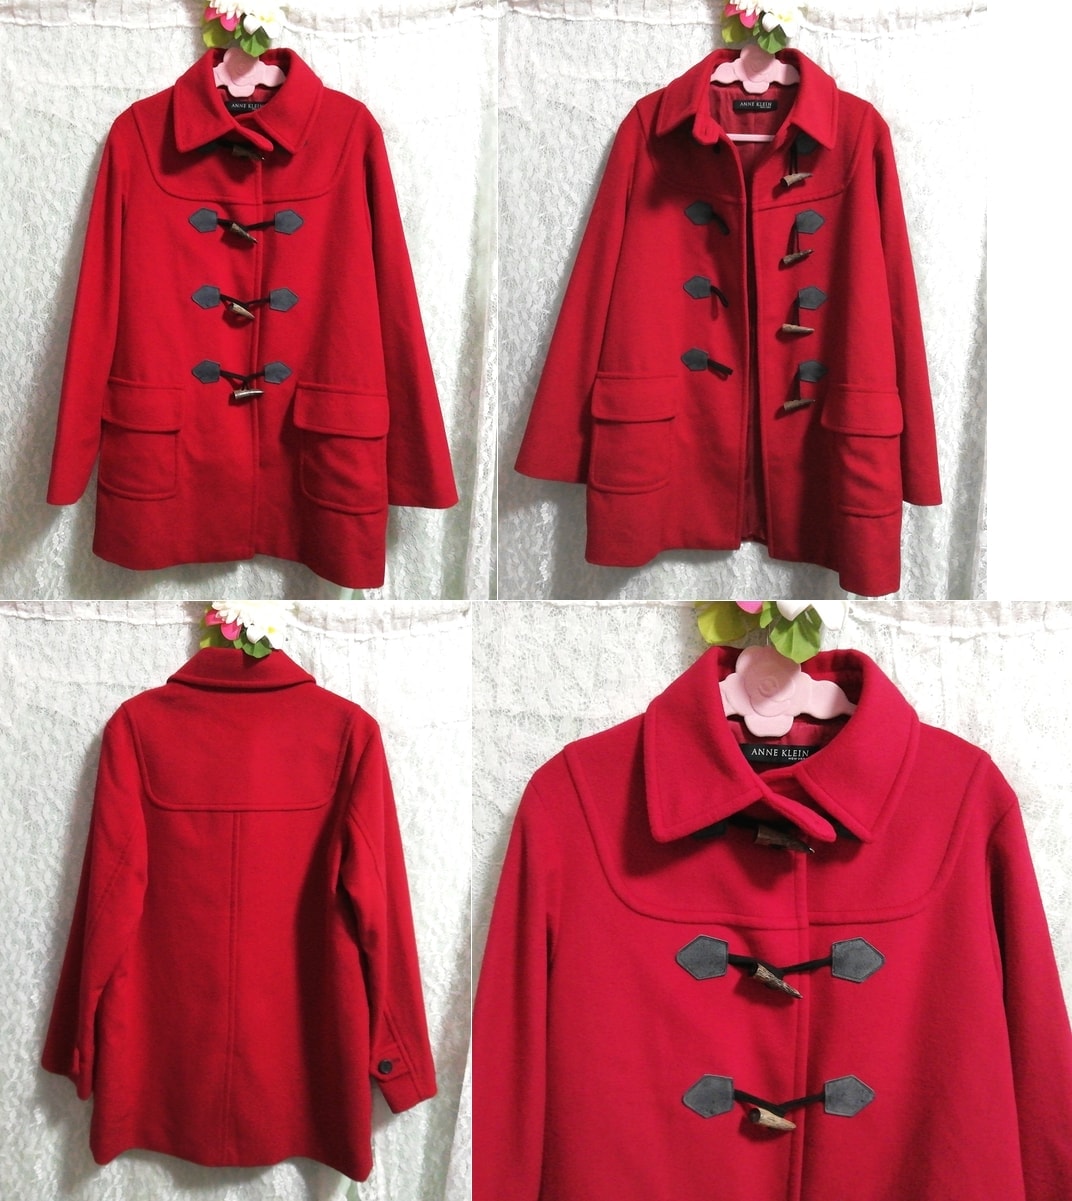 Anne klein 纽约 红色安哥拉羊毛粗呢大衣 大衣, 外套, 一般外套